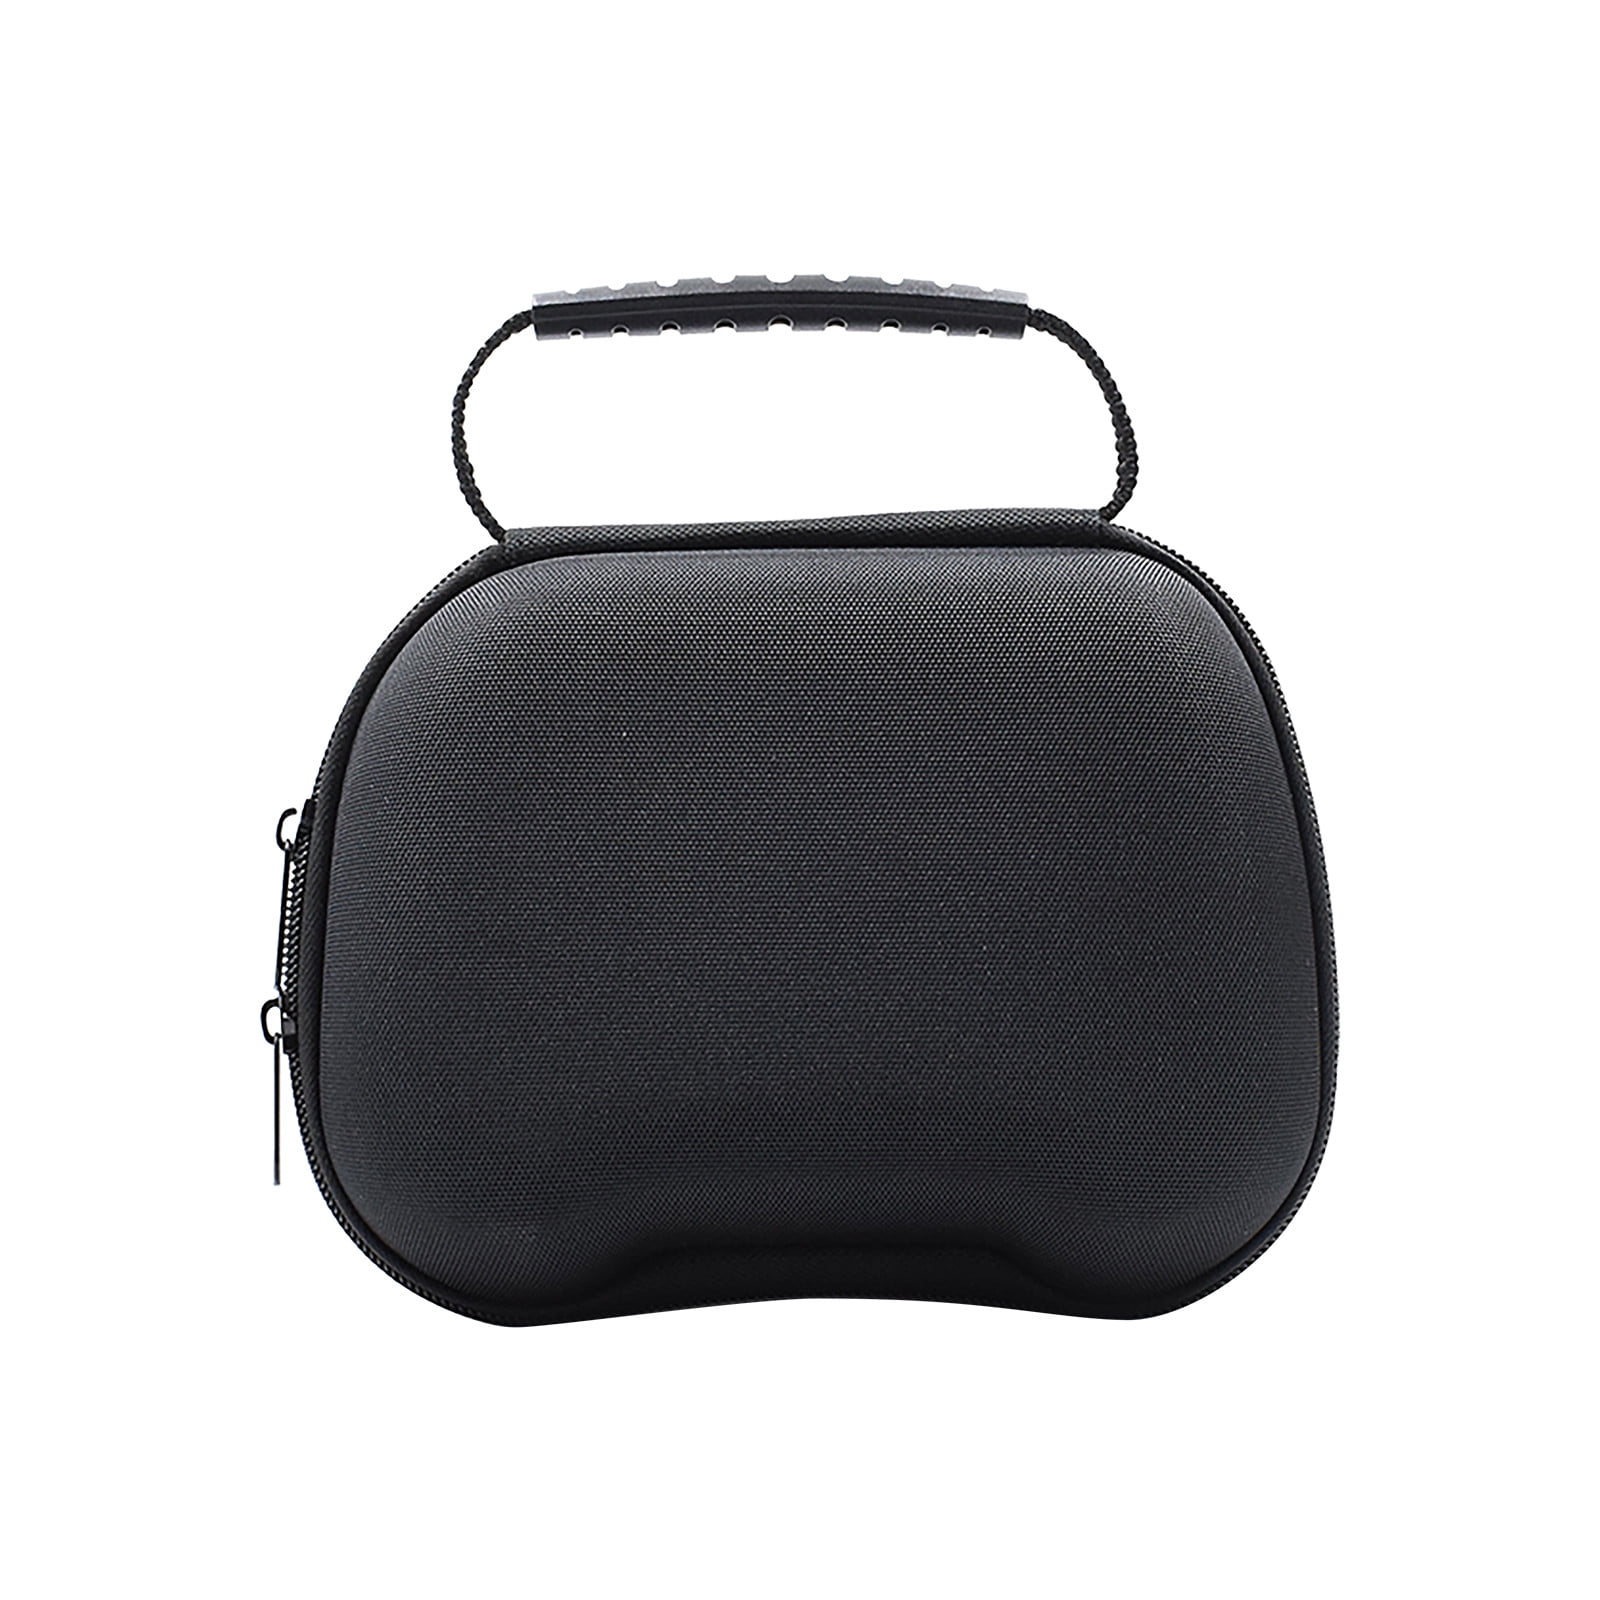 Wholesale For Oculus rift s shoulder storage bag carrying case for